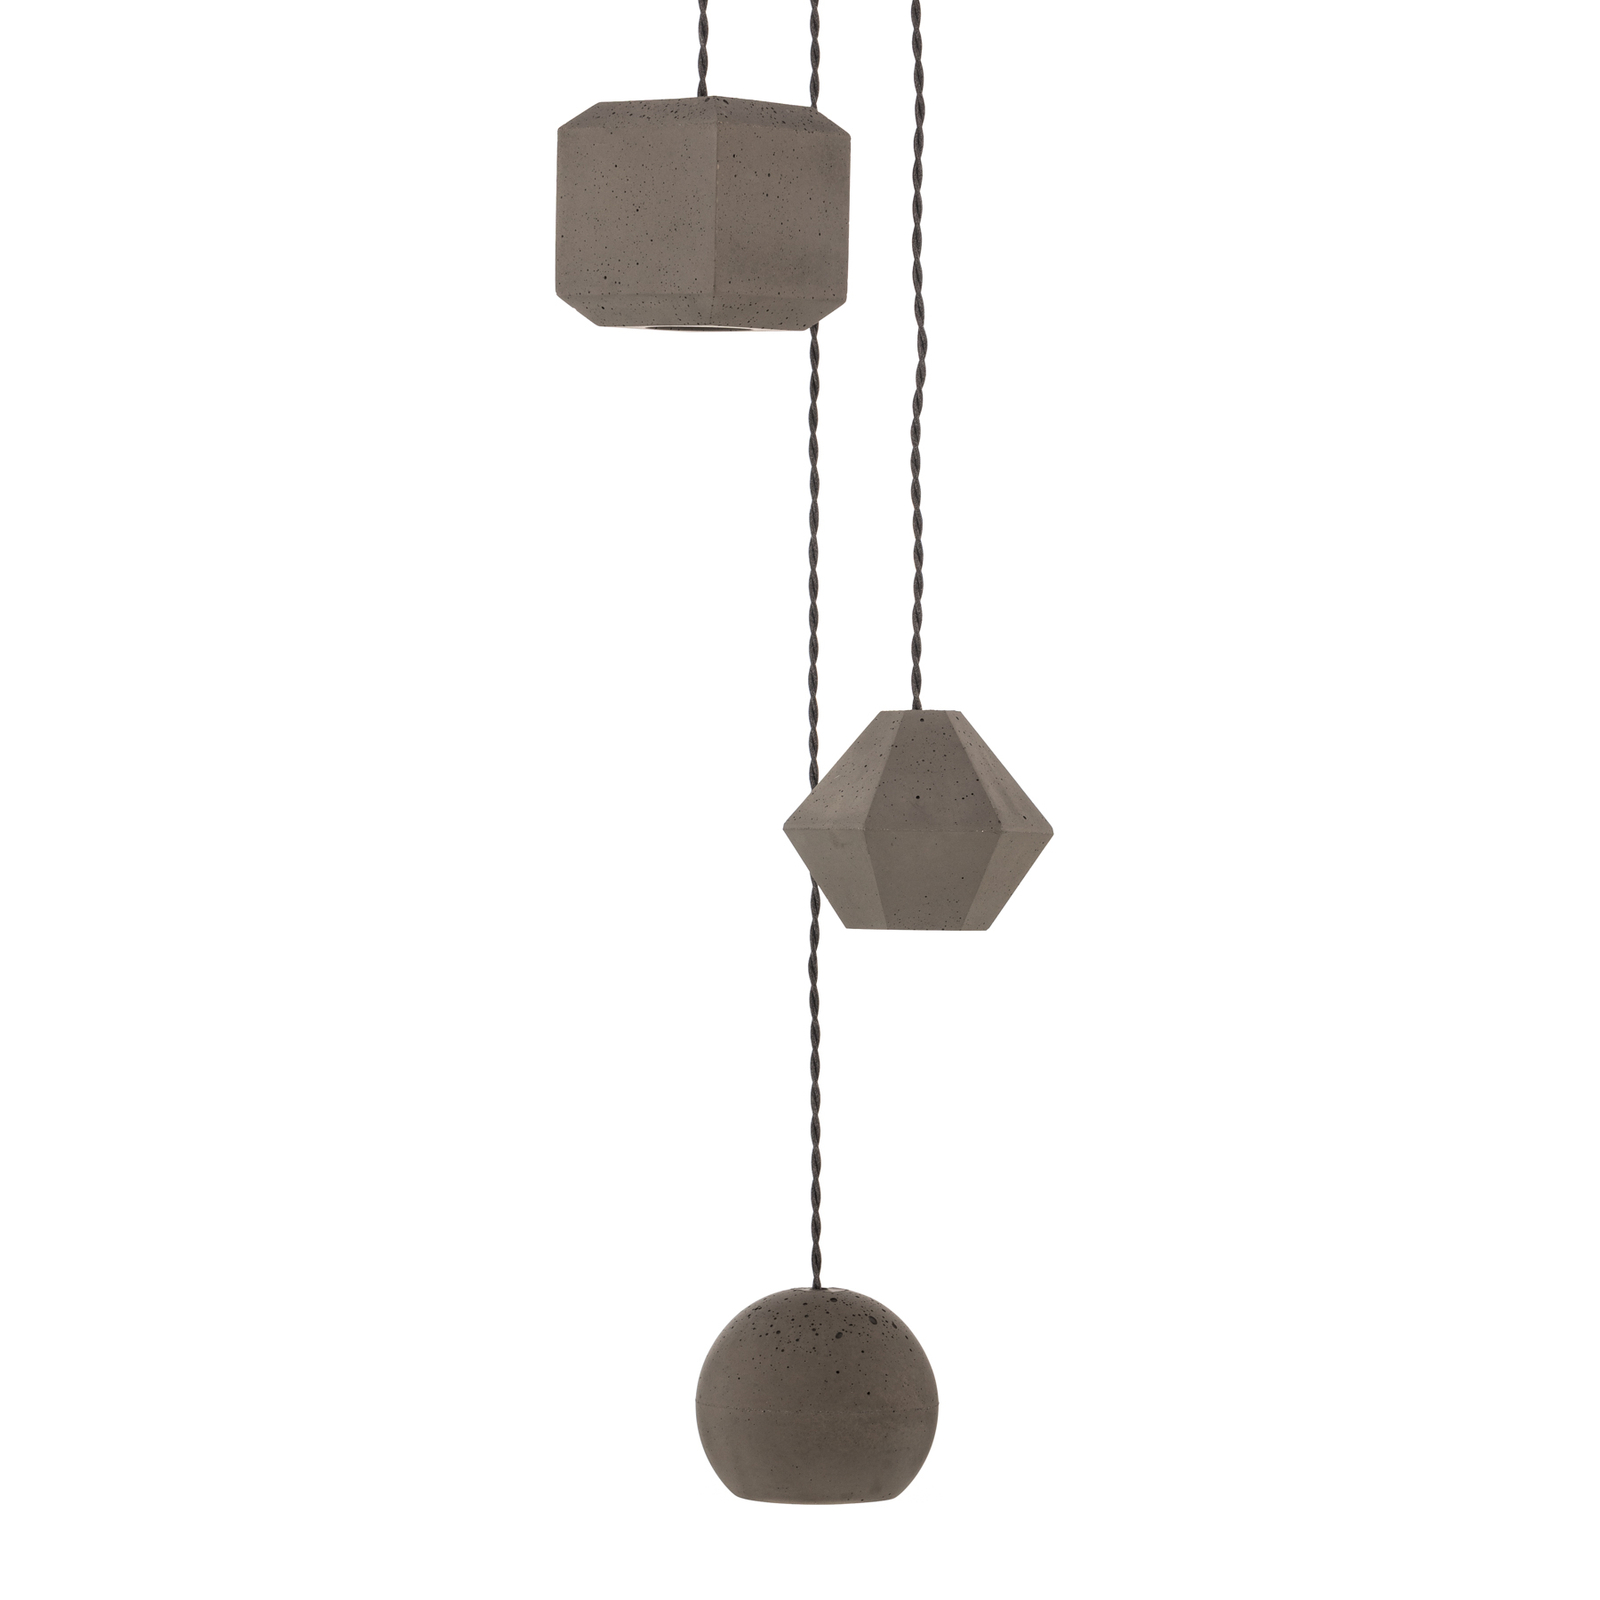 Hanglamp Geometric III van beton, 3-lamps